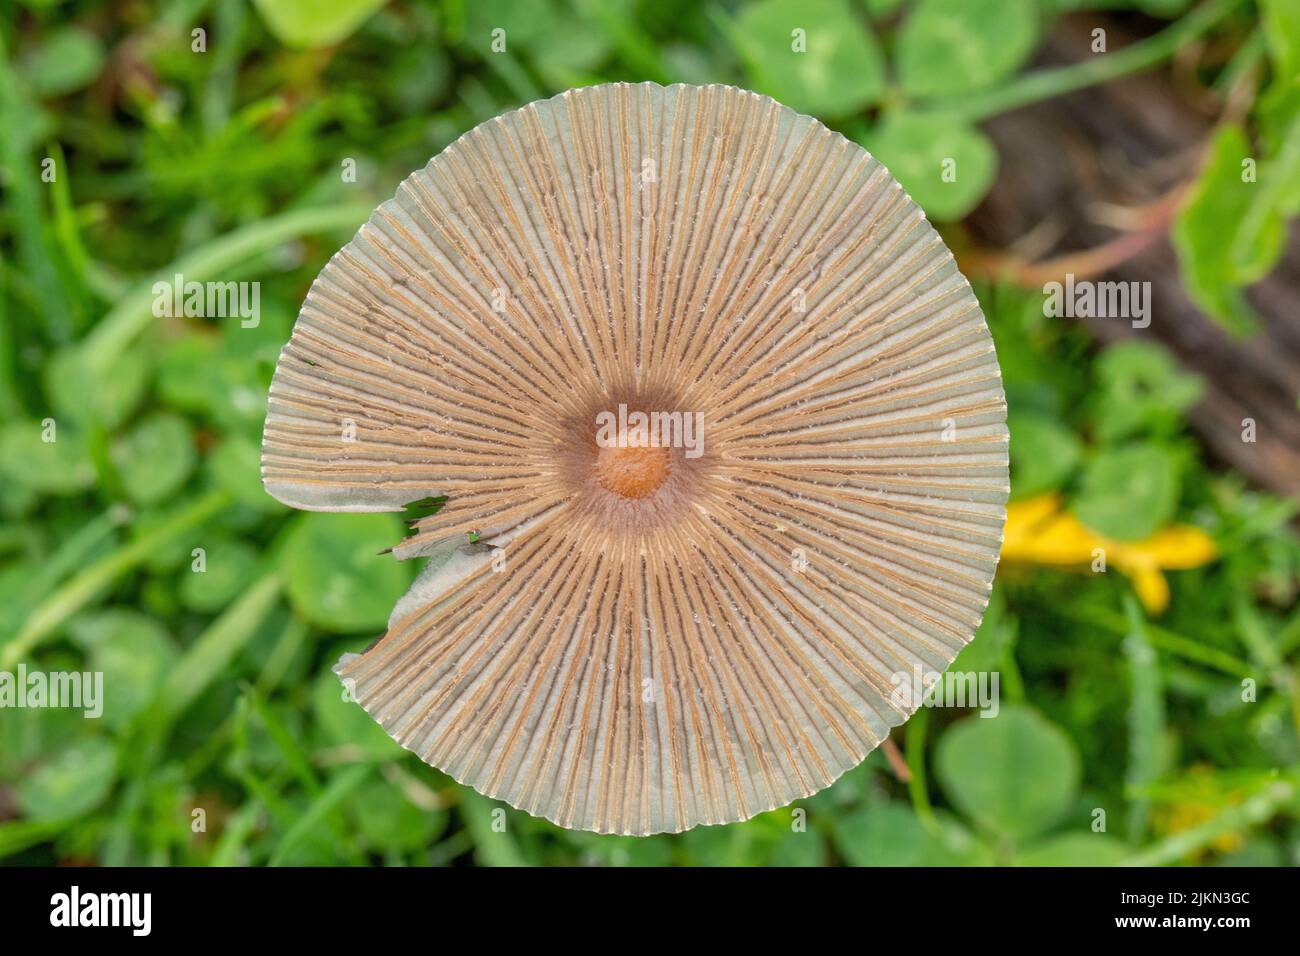 Ein Blick von oben auf einen braunen kleinen Pilz, der zwischen frischem Gras wächst Stockfoto